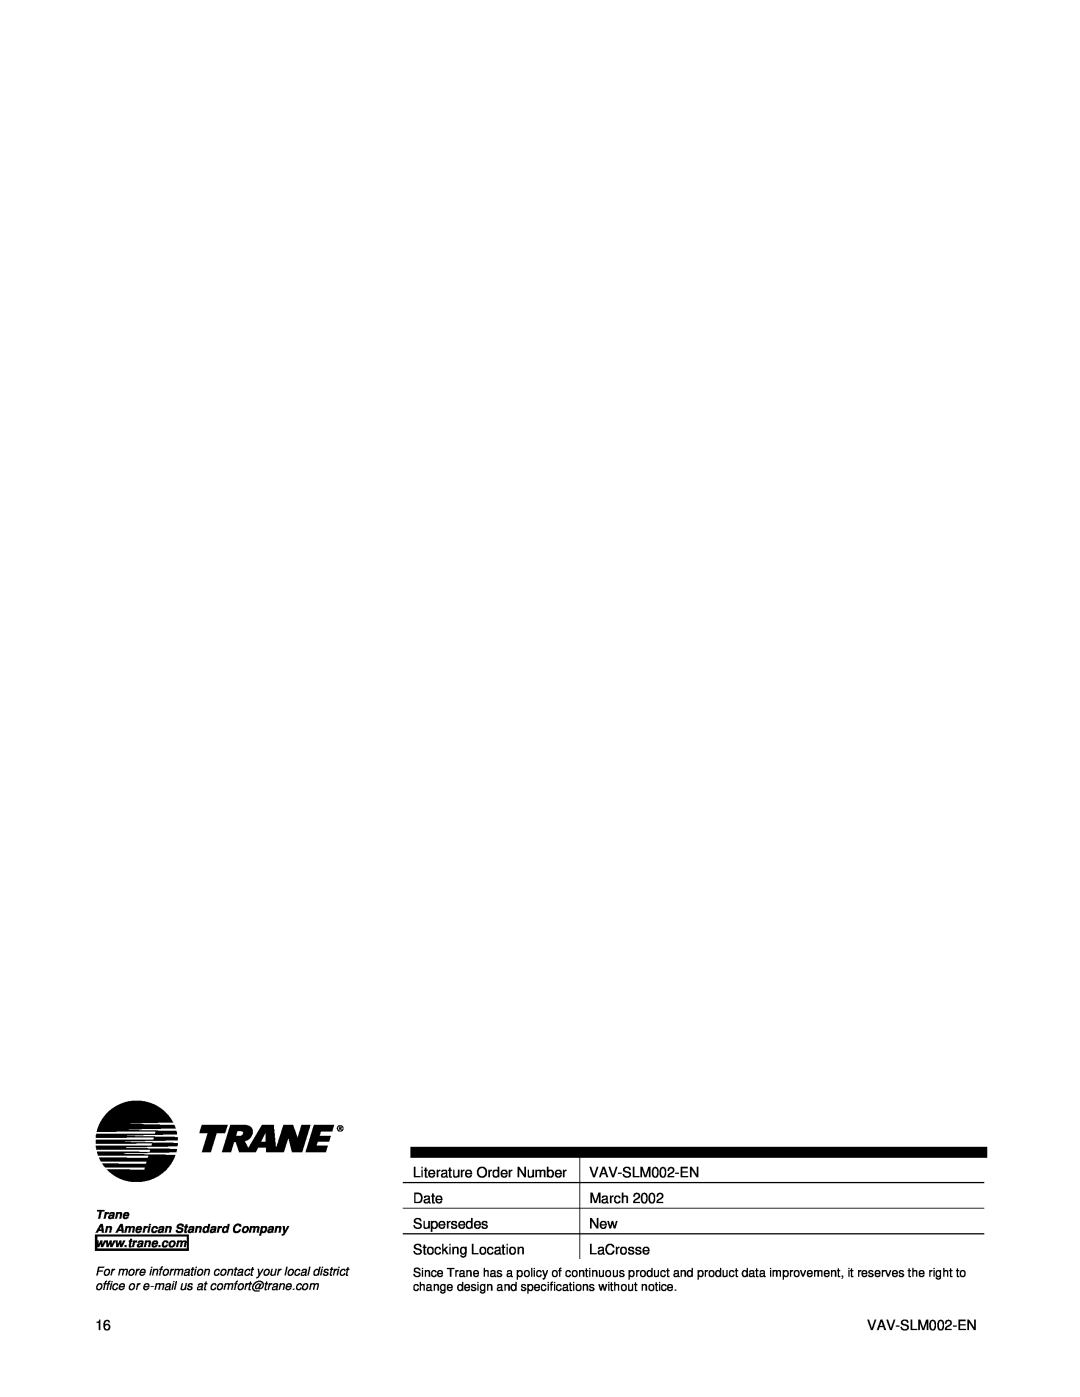 Trane VAV-SLM002-EN, VariTrac Changeover-Bypass VAV Systems manual Trane 